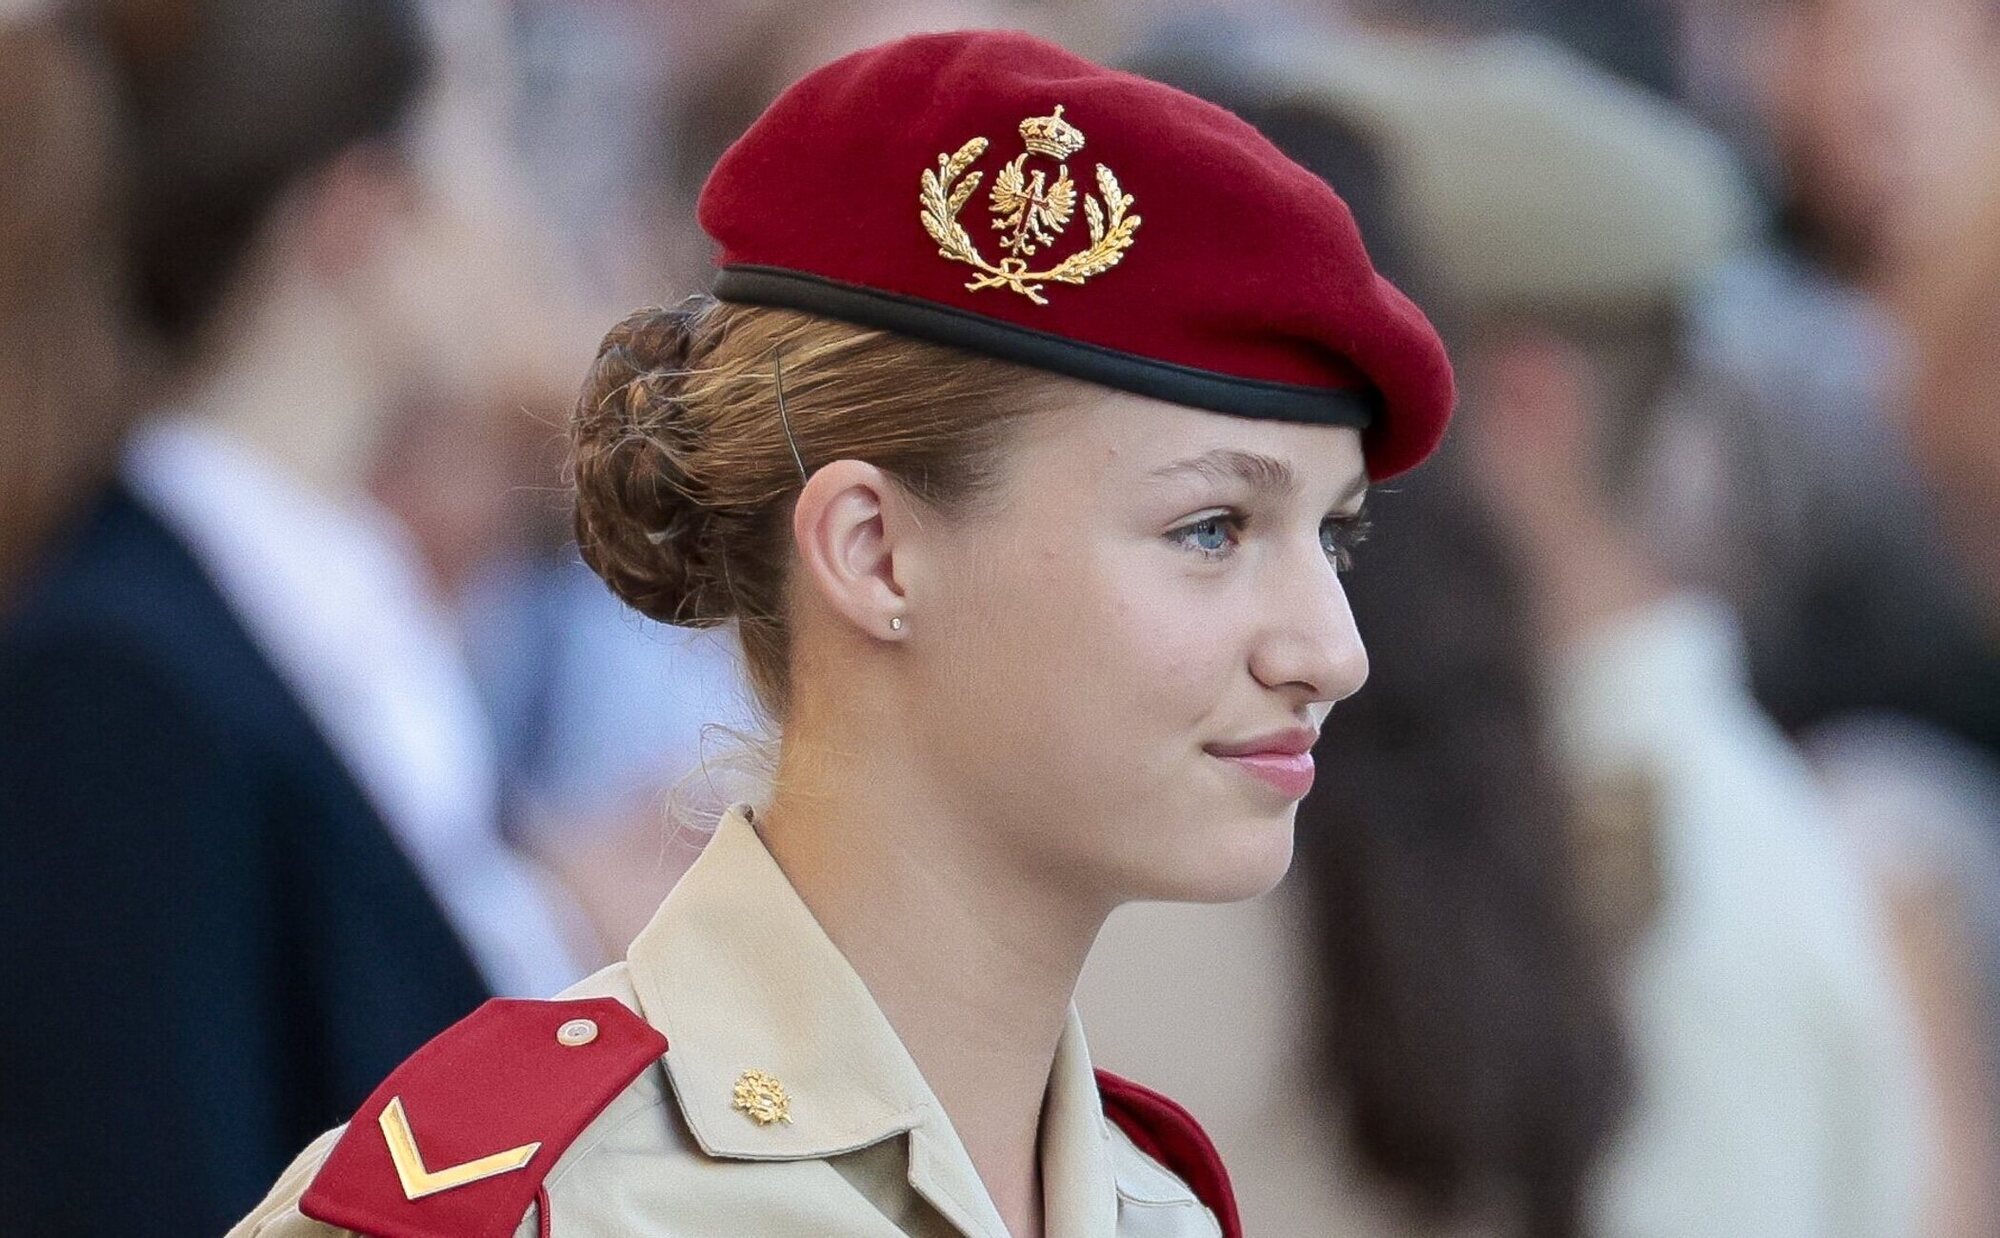 La Princesa Leonor, volcada de nuevo en su formación militar: entrenamientos, pista de combate y prácticas de tiro